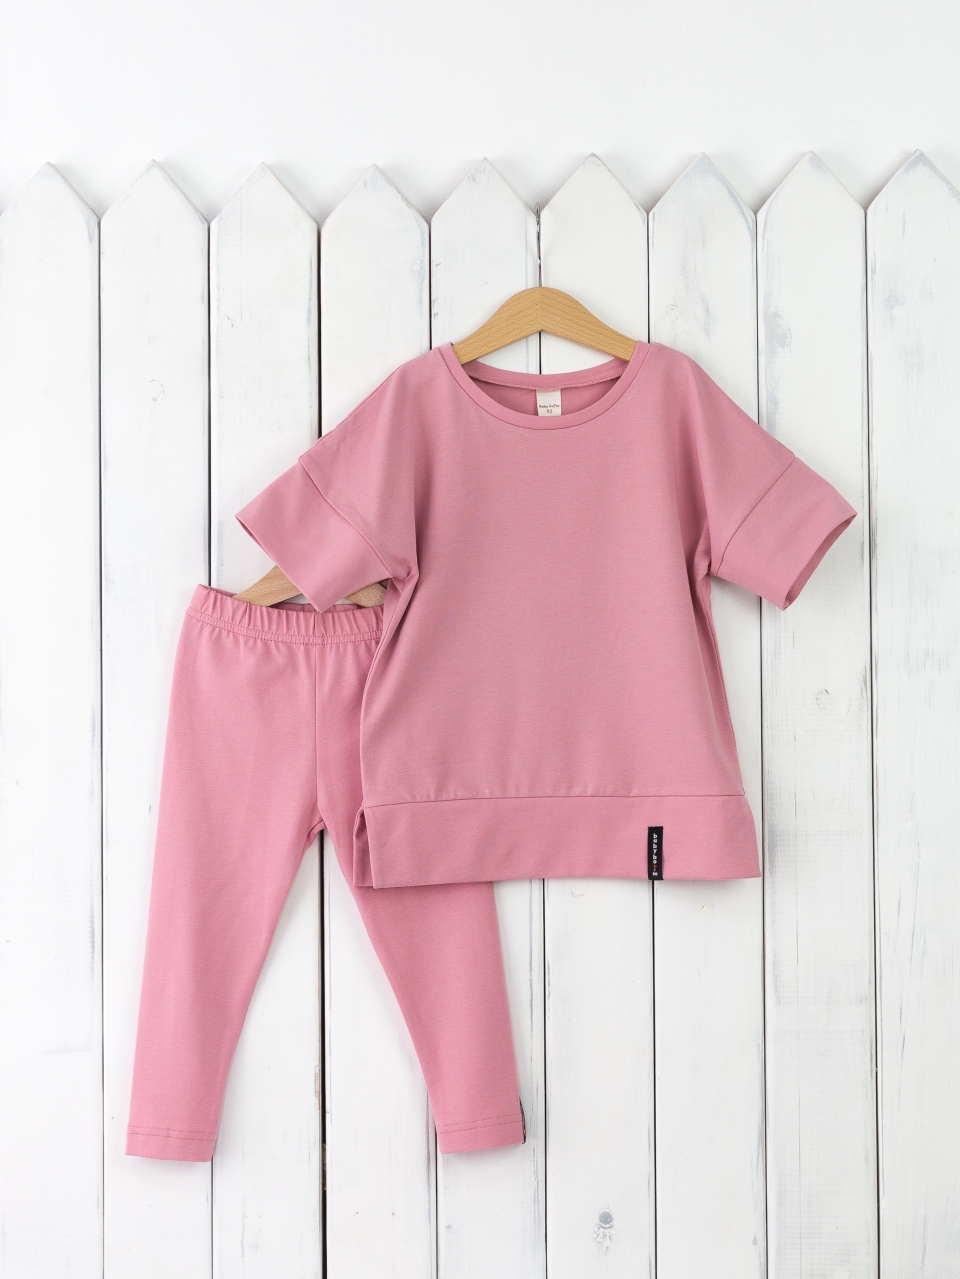 КД352/11-К Комплект для девочки р.98 футболка+легинсы/розовый зефир Бэби Бум - Ижевск 